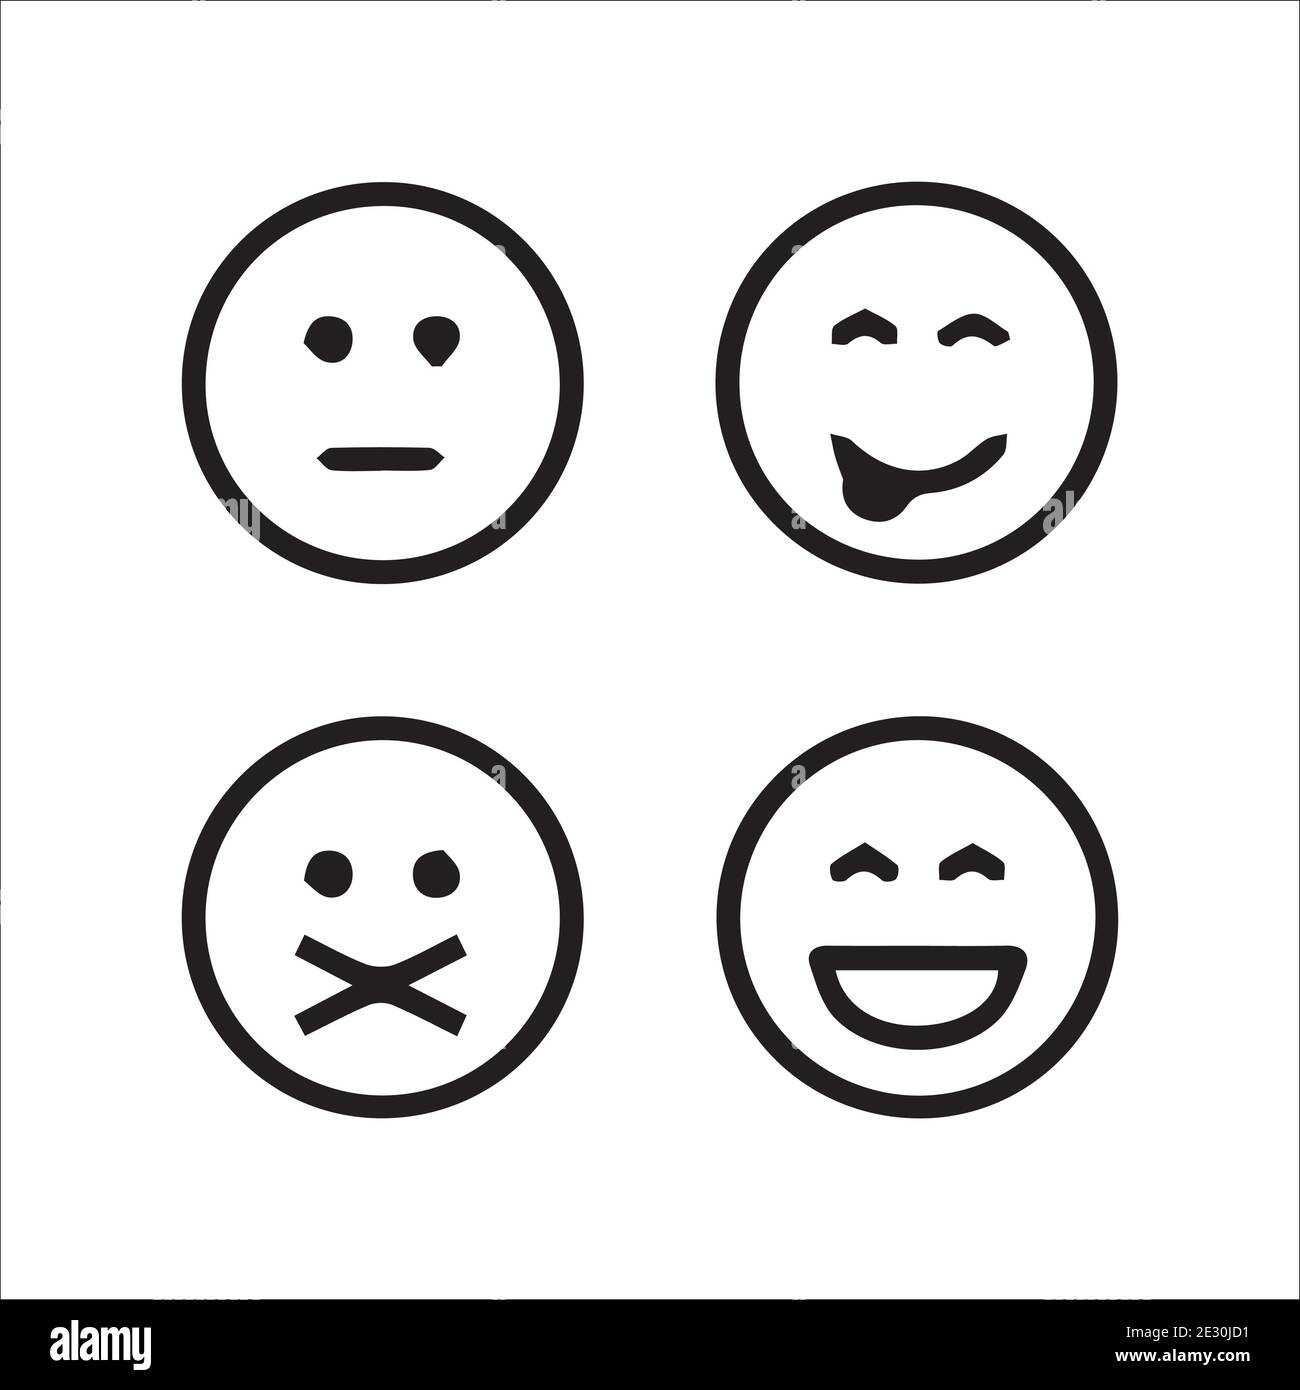 creative emojis set collection Stock Vector